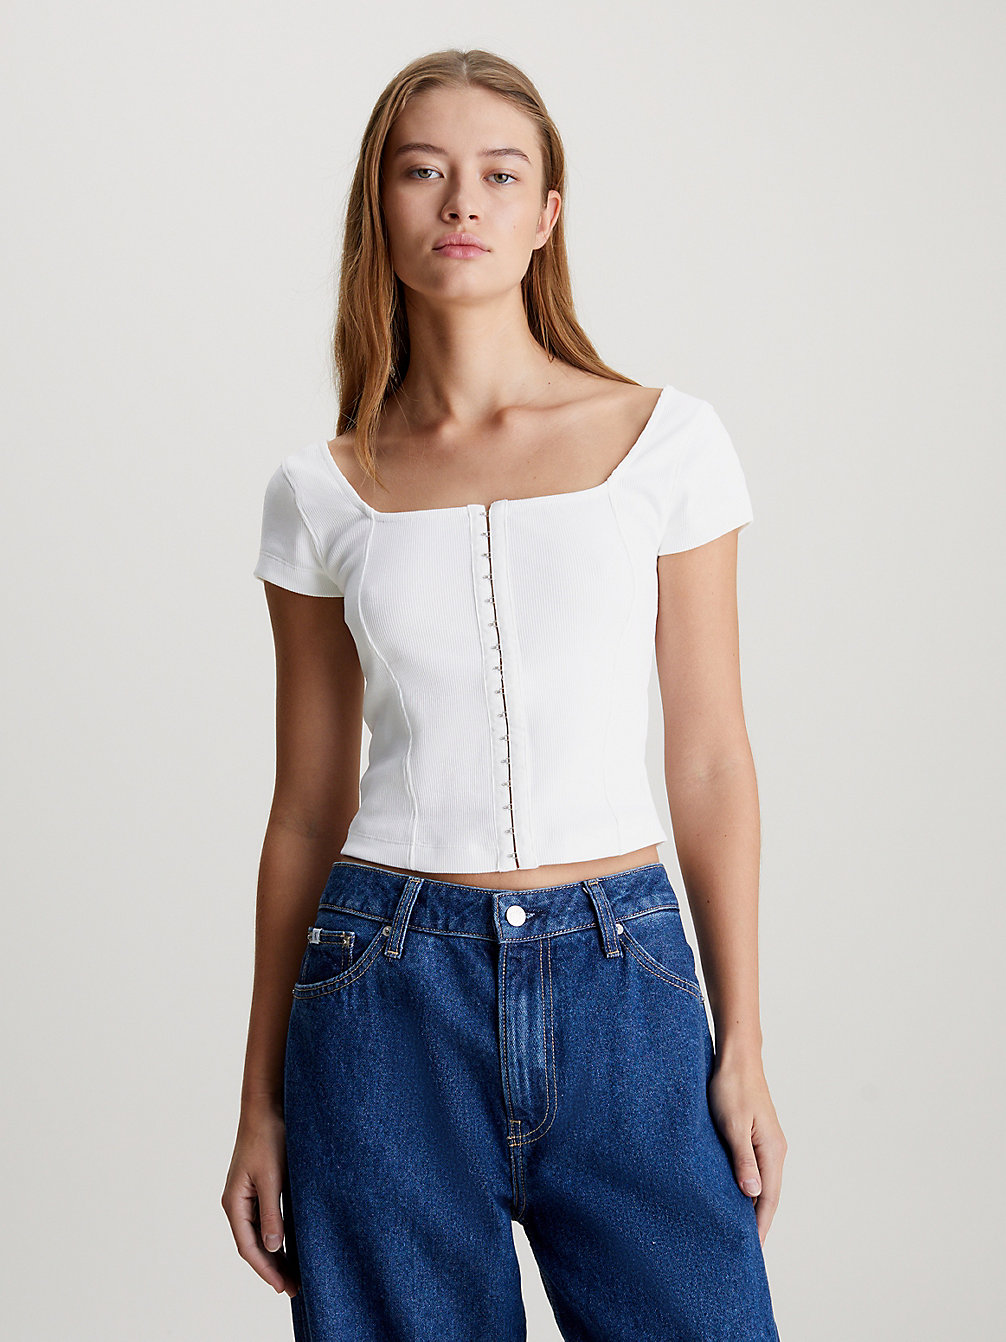 BRIGHT WHITE > T-Shirt Aus Gerippter Baumwolle Mit Ösen- Und Hakenverschluss > undefined Damen - Calvin Klein